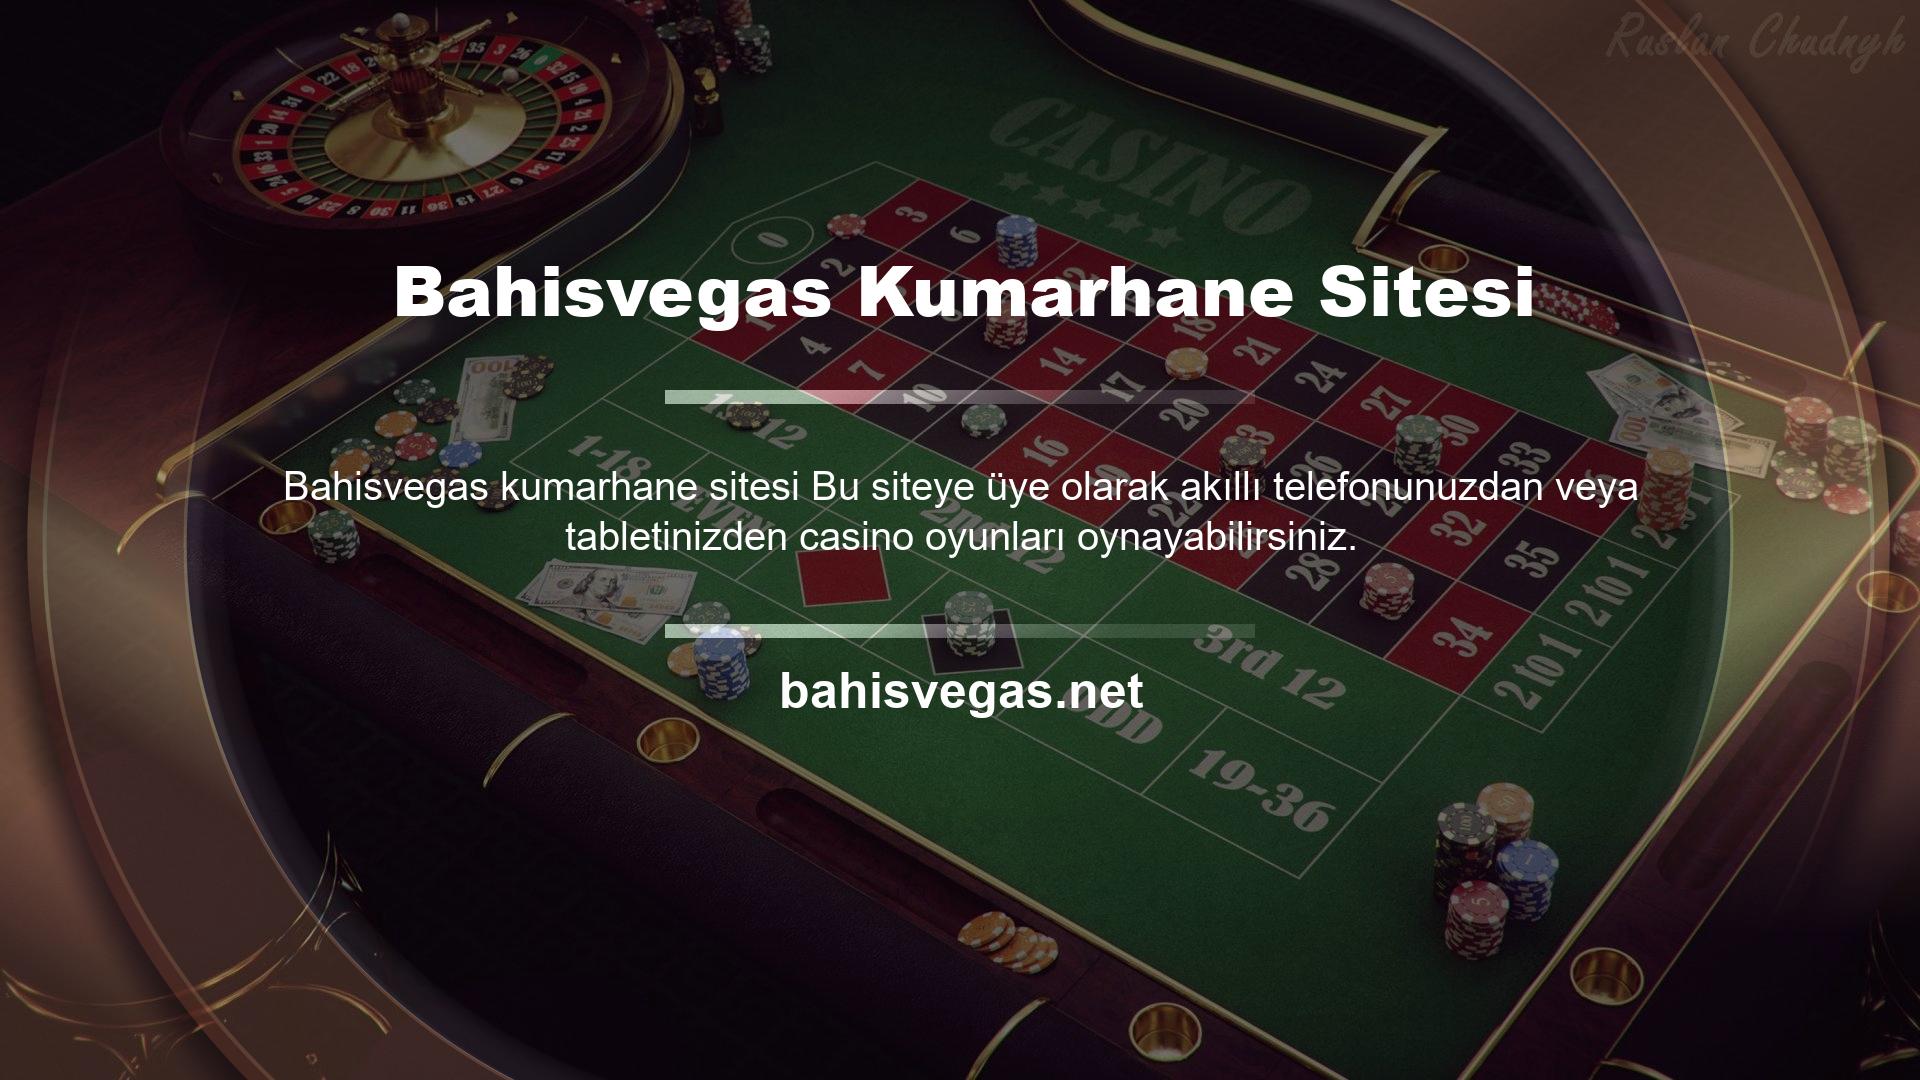 Mobil cihazınızdan Casino World mobil sitesine giriş yapın ve slot, poker, blackjack, rulet, bakara ve daha fazlası gibi farklı oyunlarda hem video casino hem de canlı casino deneyimini yeniden yaşayabilirsiniz